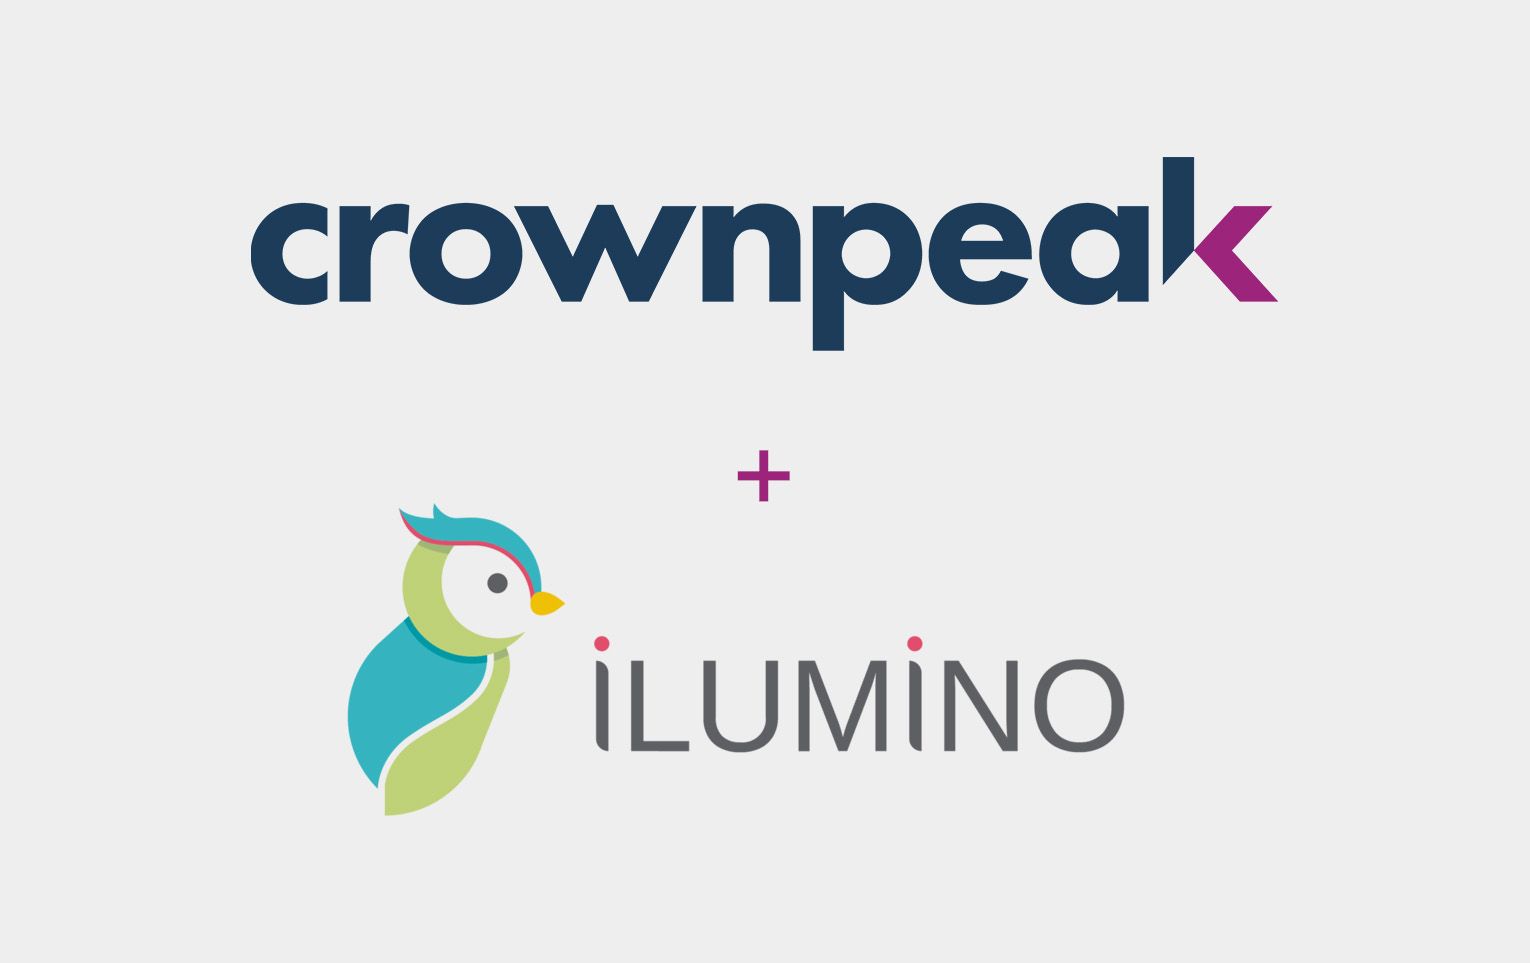 Crownpeak and ilumino logos in lockup format.